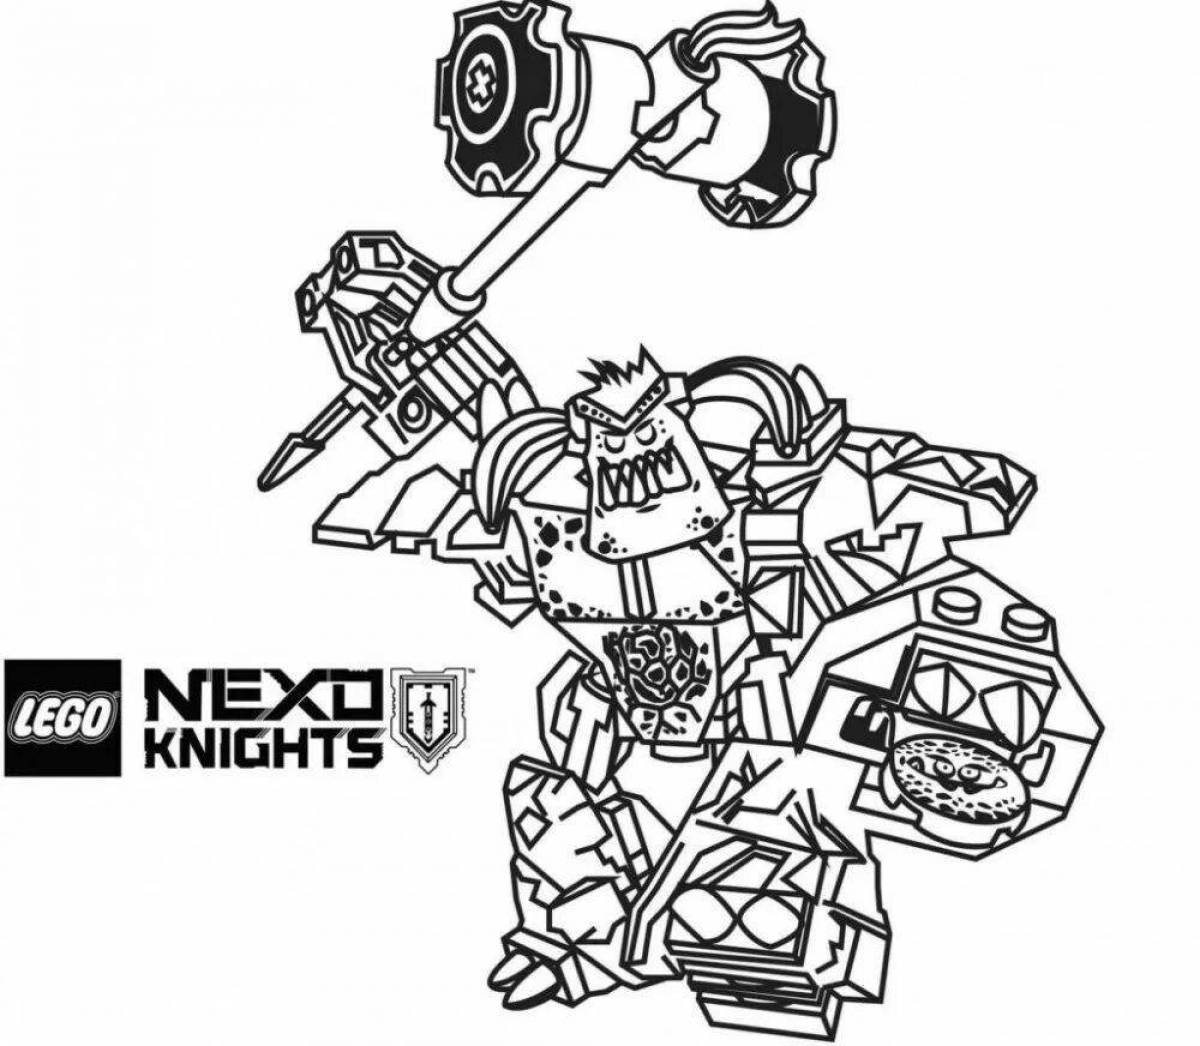 Nexo knights fun coloring book